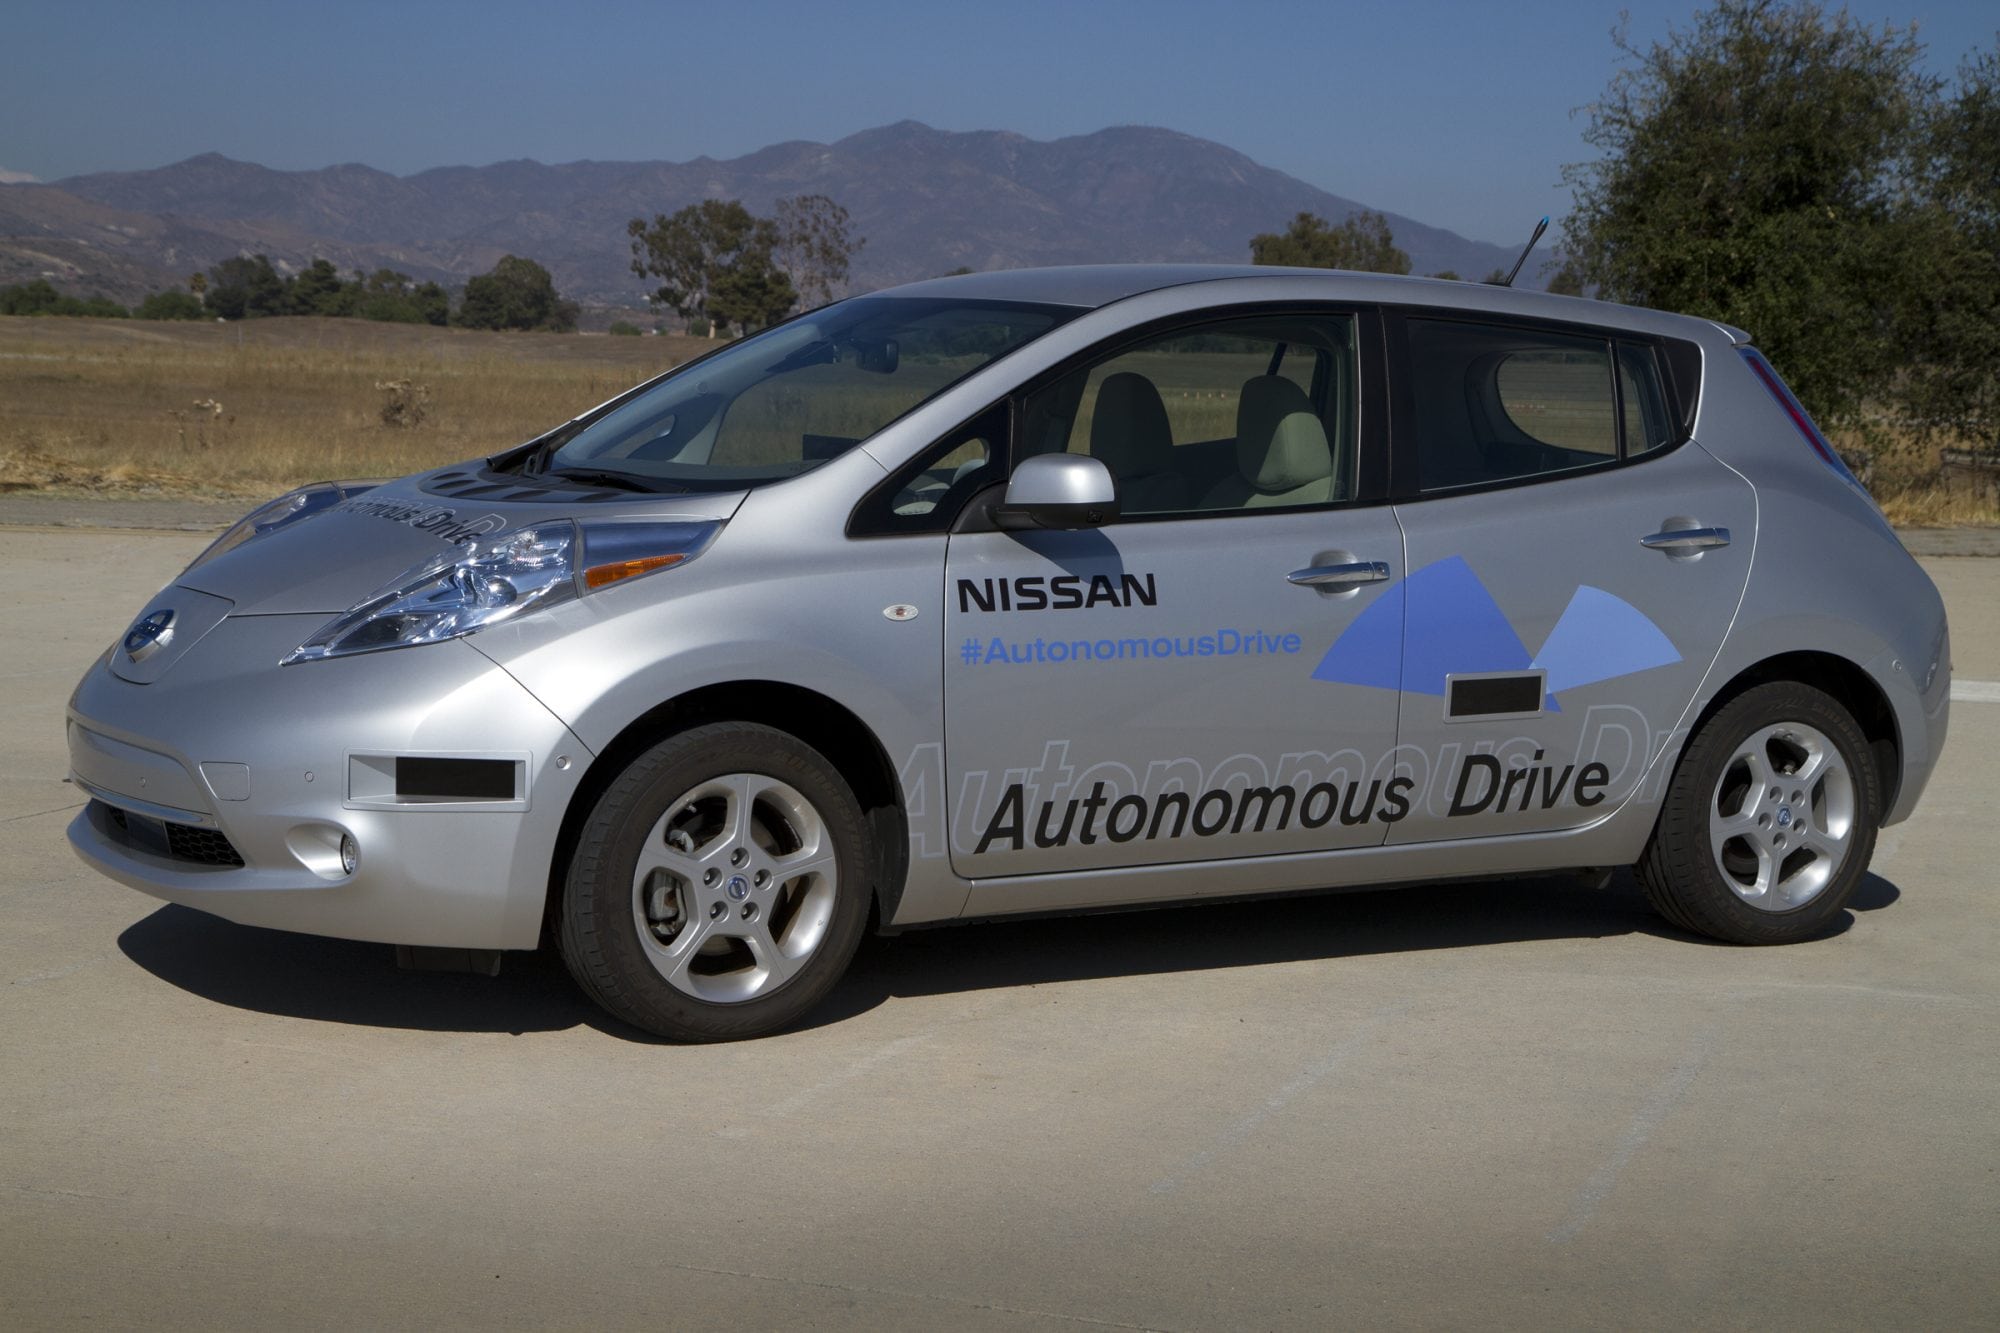 Nissan autonomous car #10